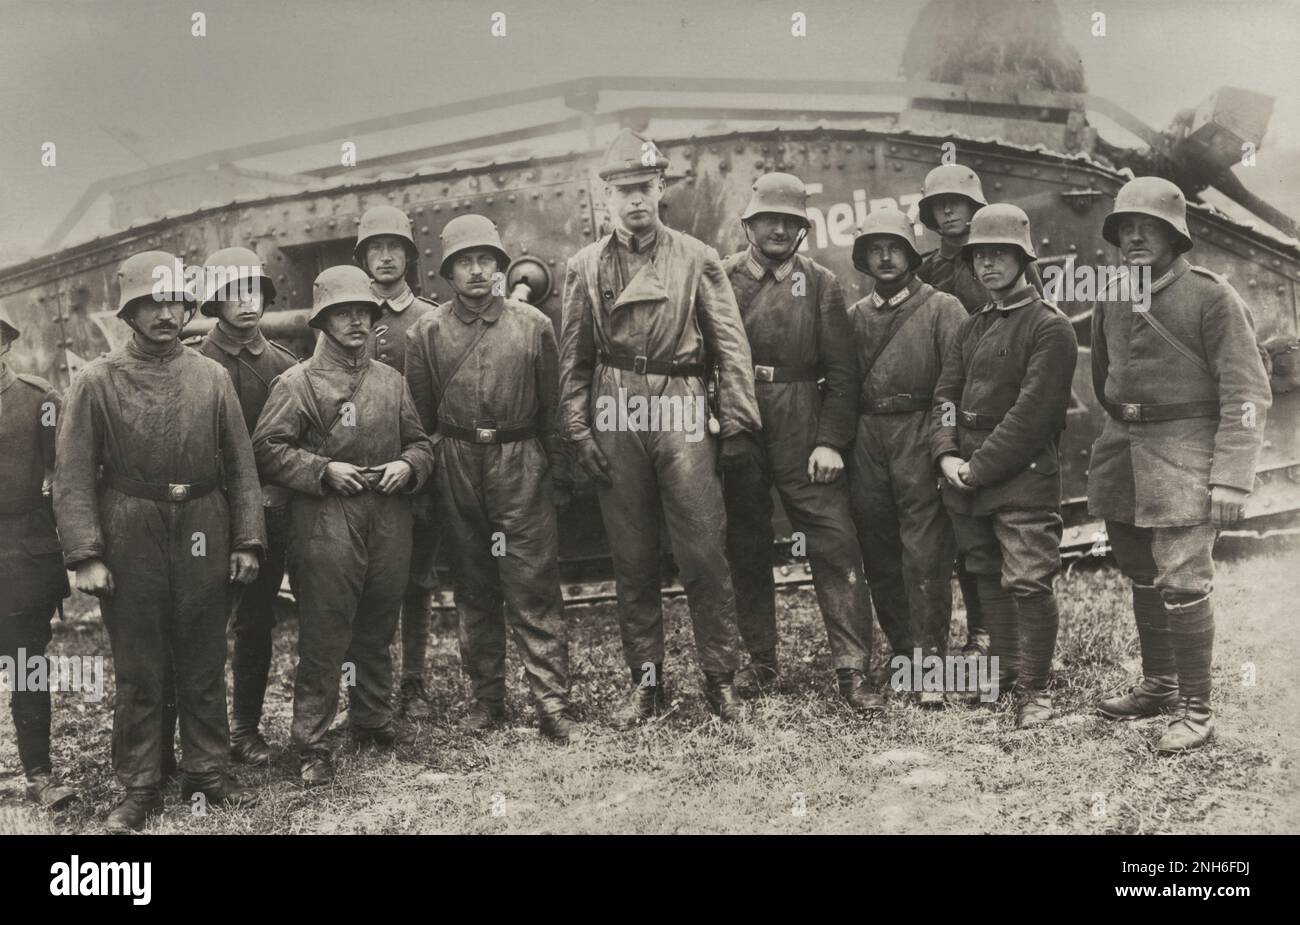 1914-1918. Erster Weltkrieg Eine Gruppe deutscher Soldaten, die sich still vor einem Mark IV Panzer namens "Heinz" gestellt haben. Laut Inschrift ist es die Crew des Fahrzeugs. Stockfoto